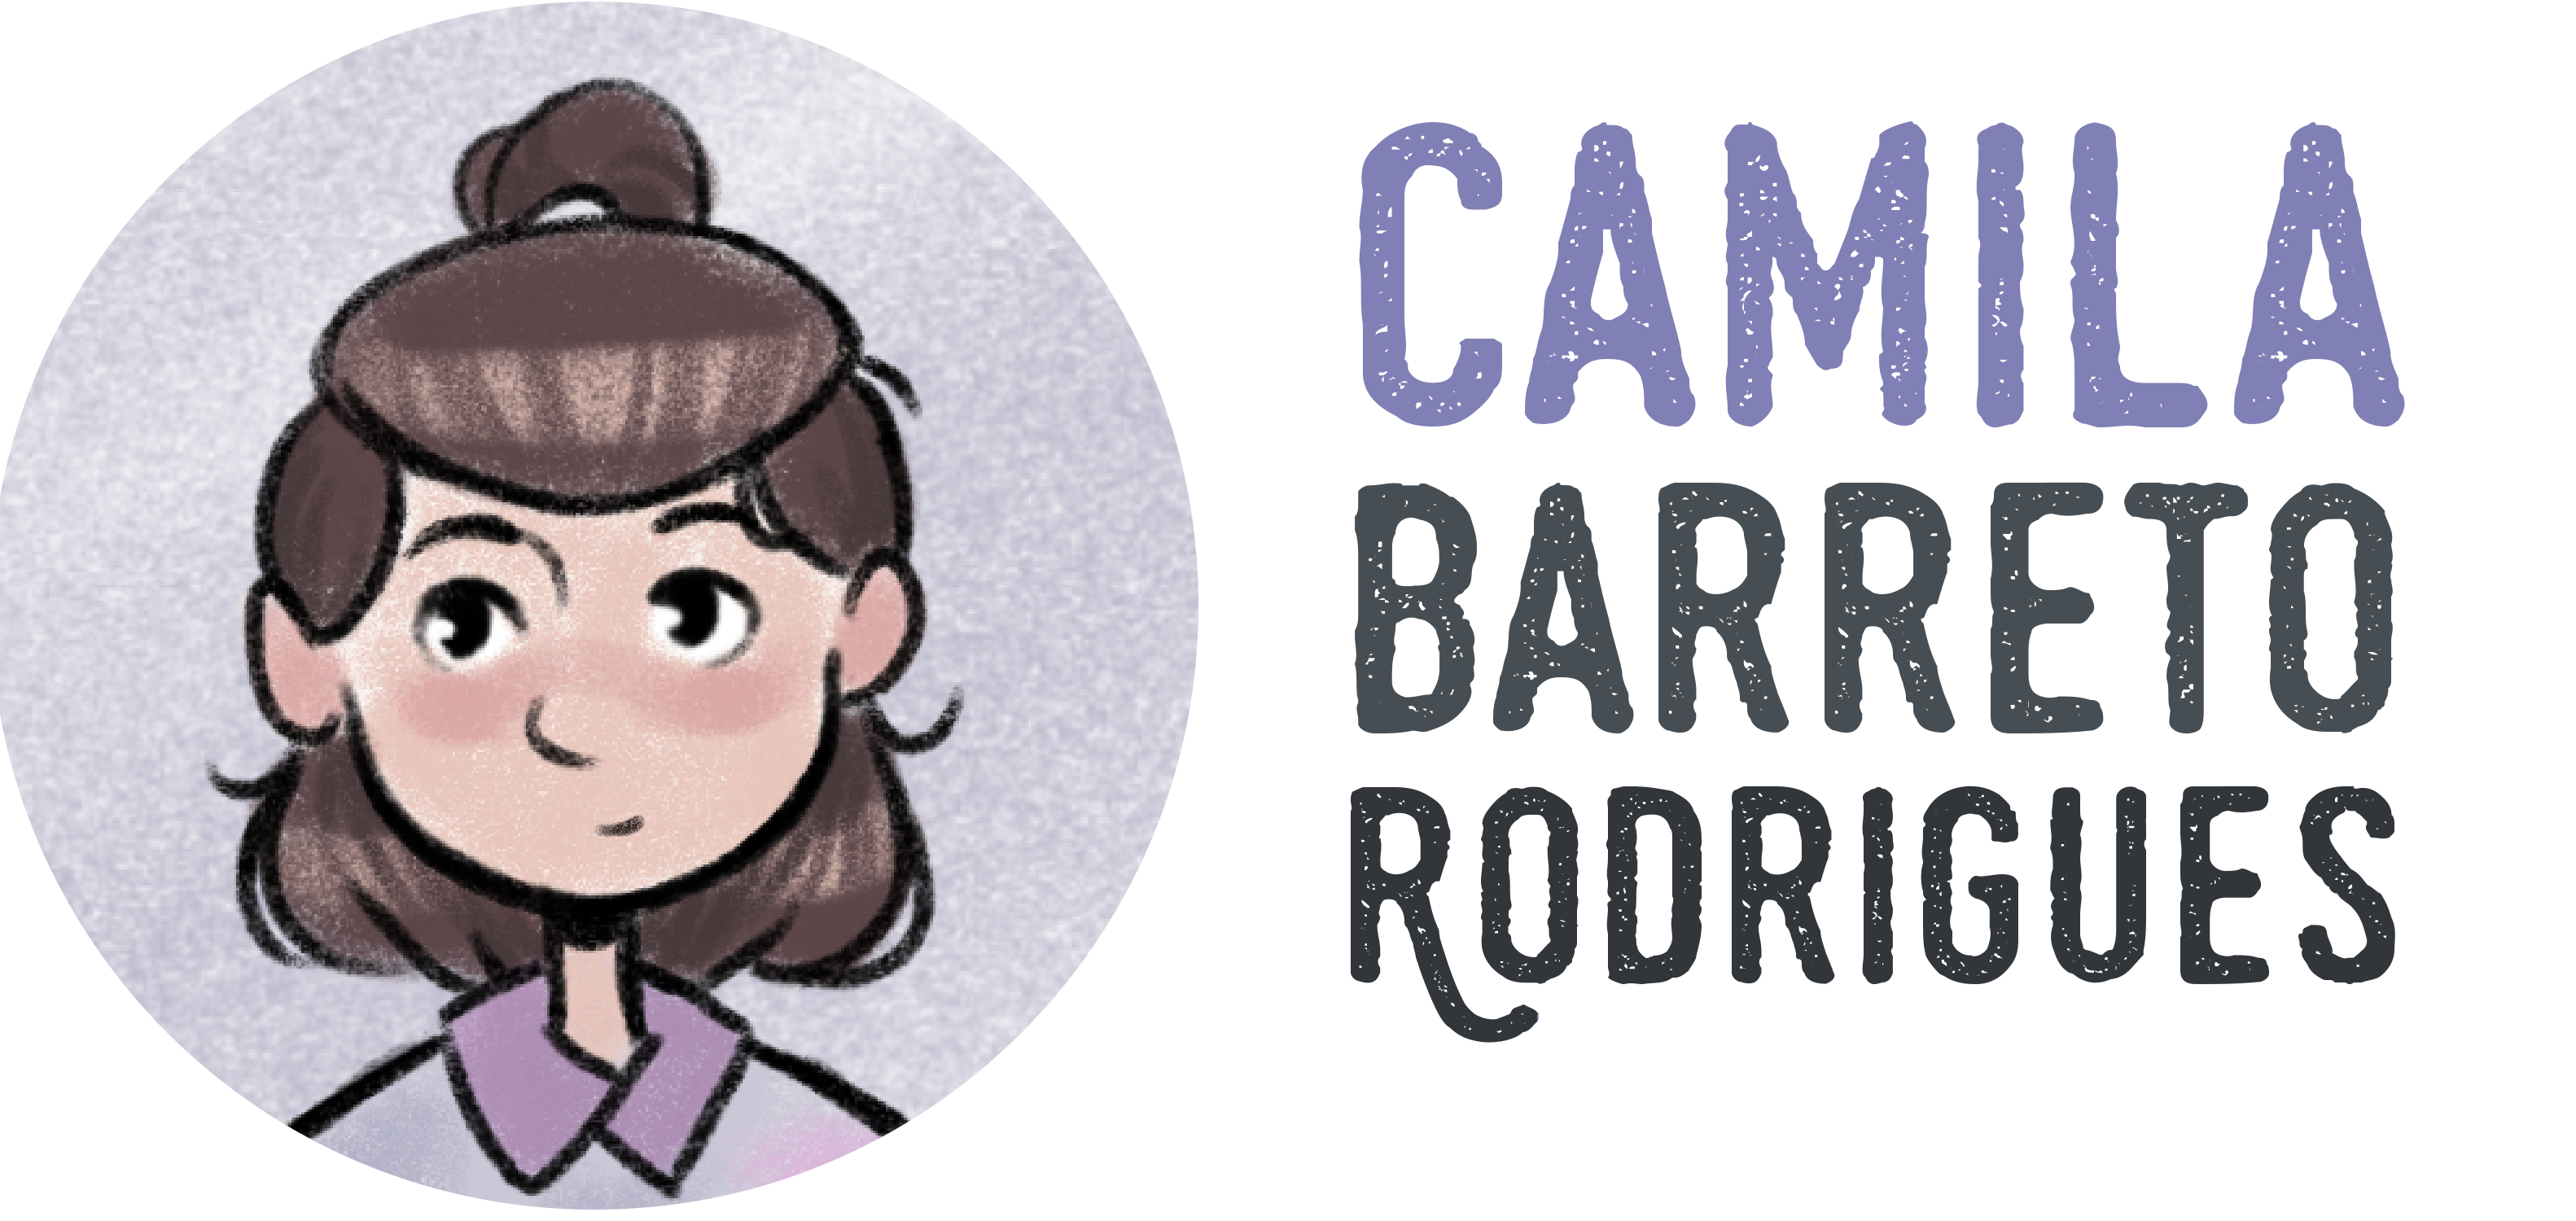 Camila Barreto Rodrigues